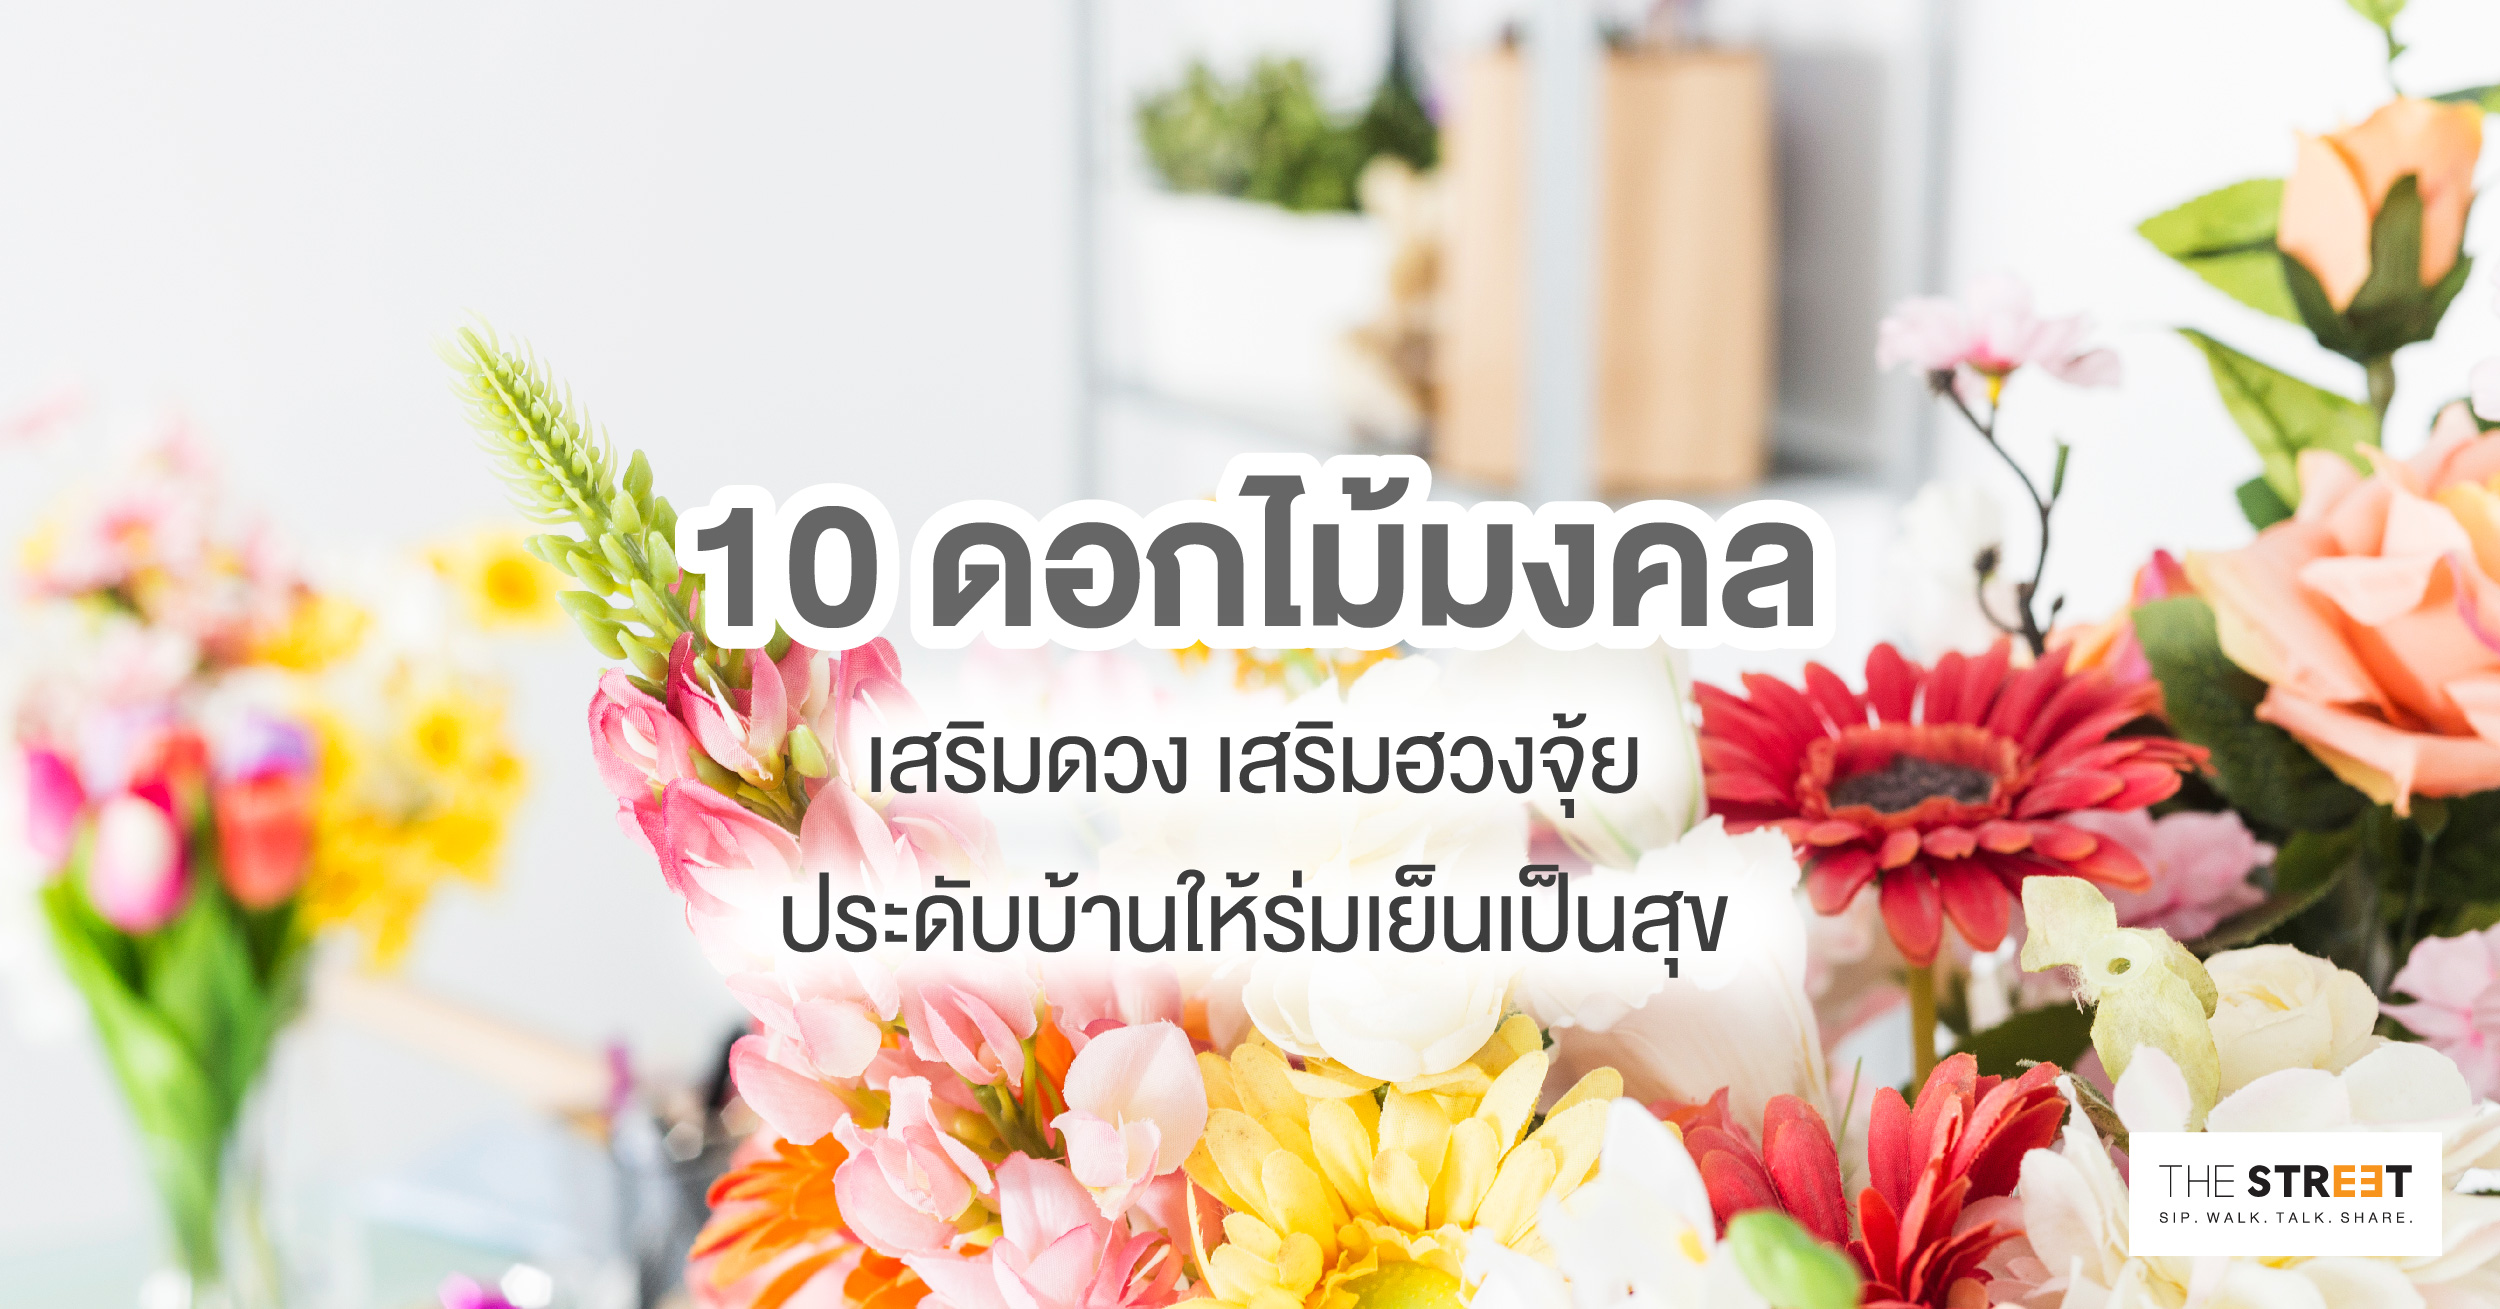 10 ดอกไม้มงคลเสริมดวง เสริมฮวงจุ้ย ประดับบ้านให้ร่มเย็นเป็นสุข